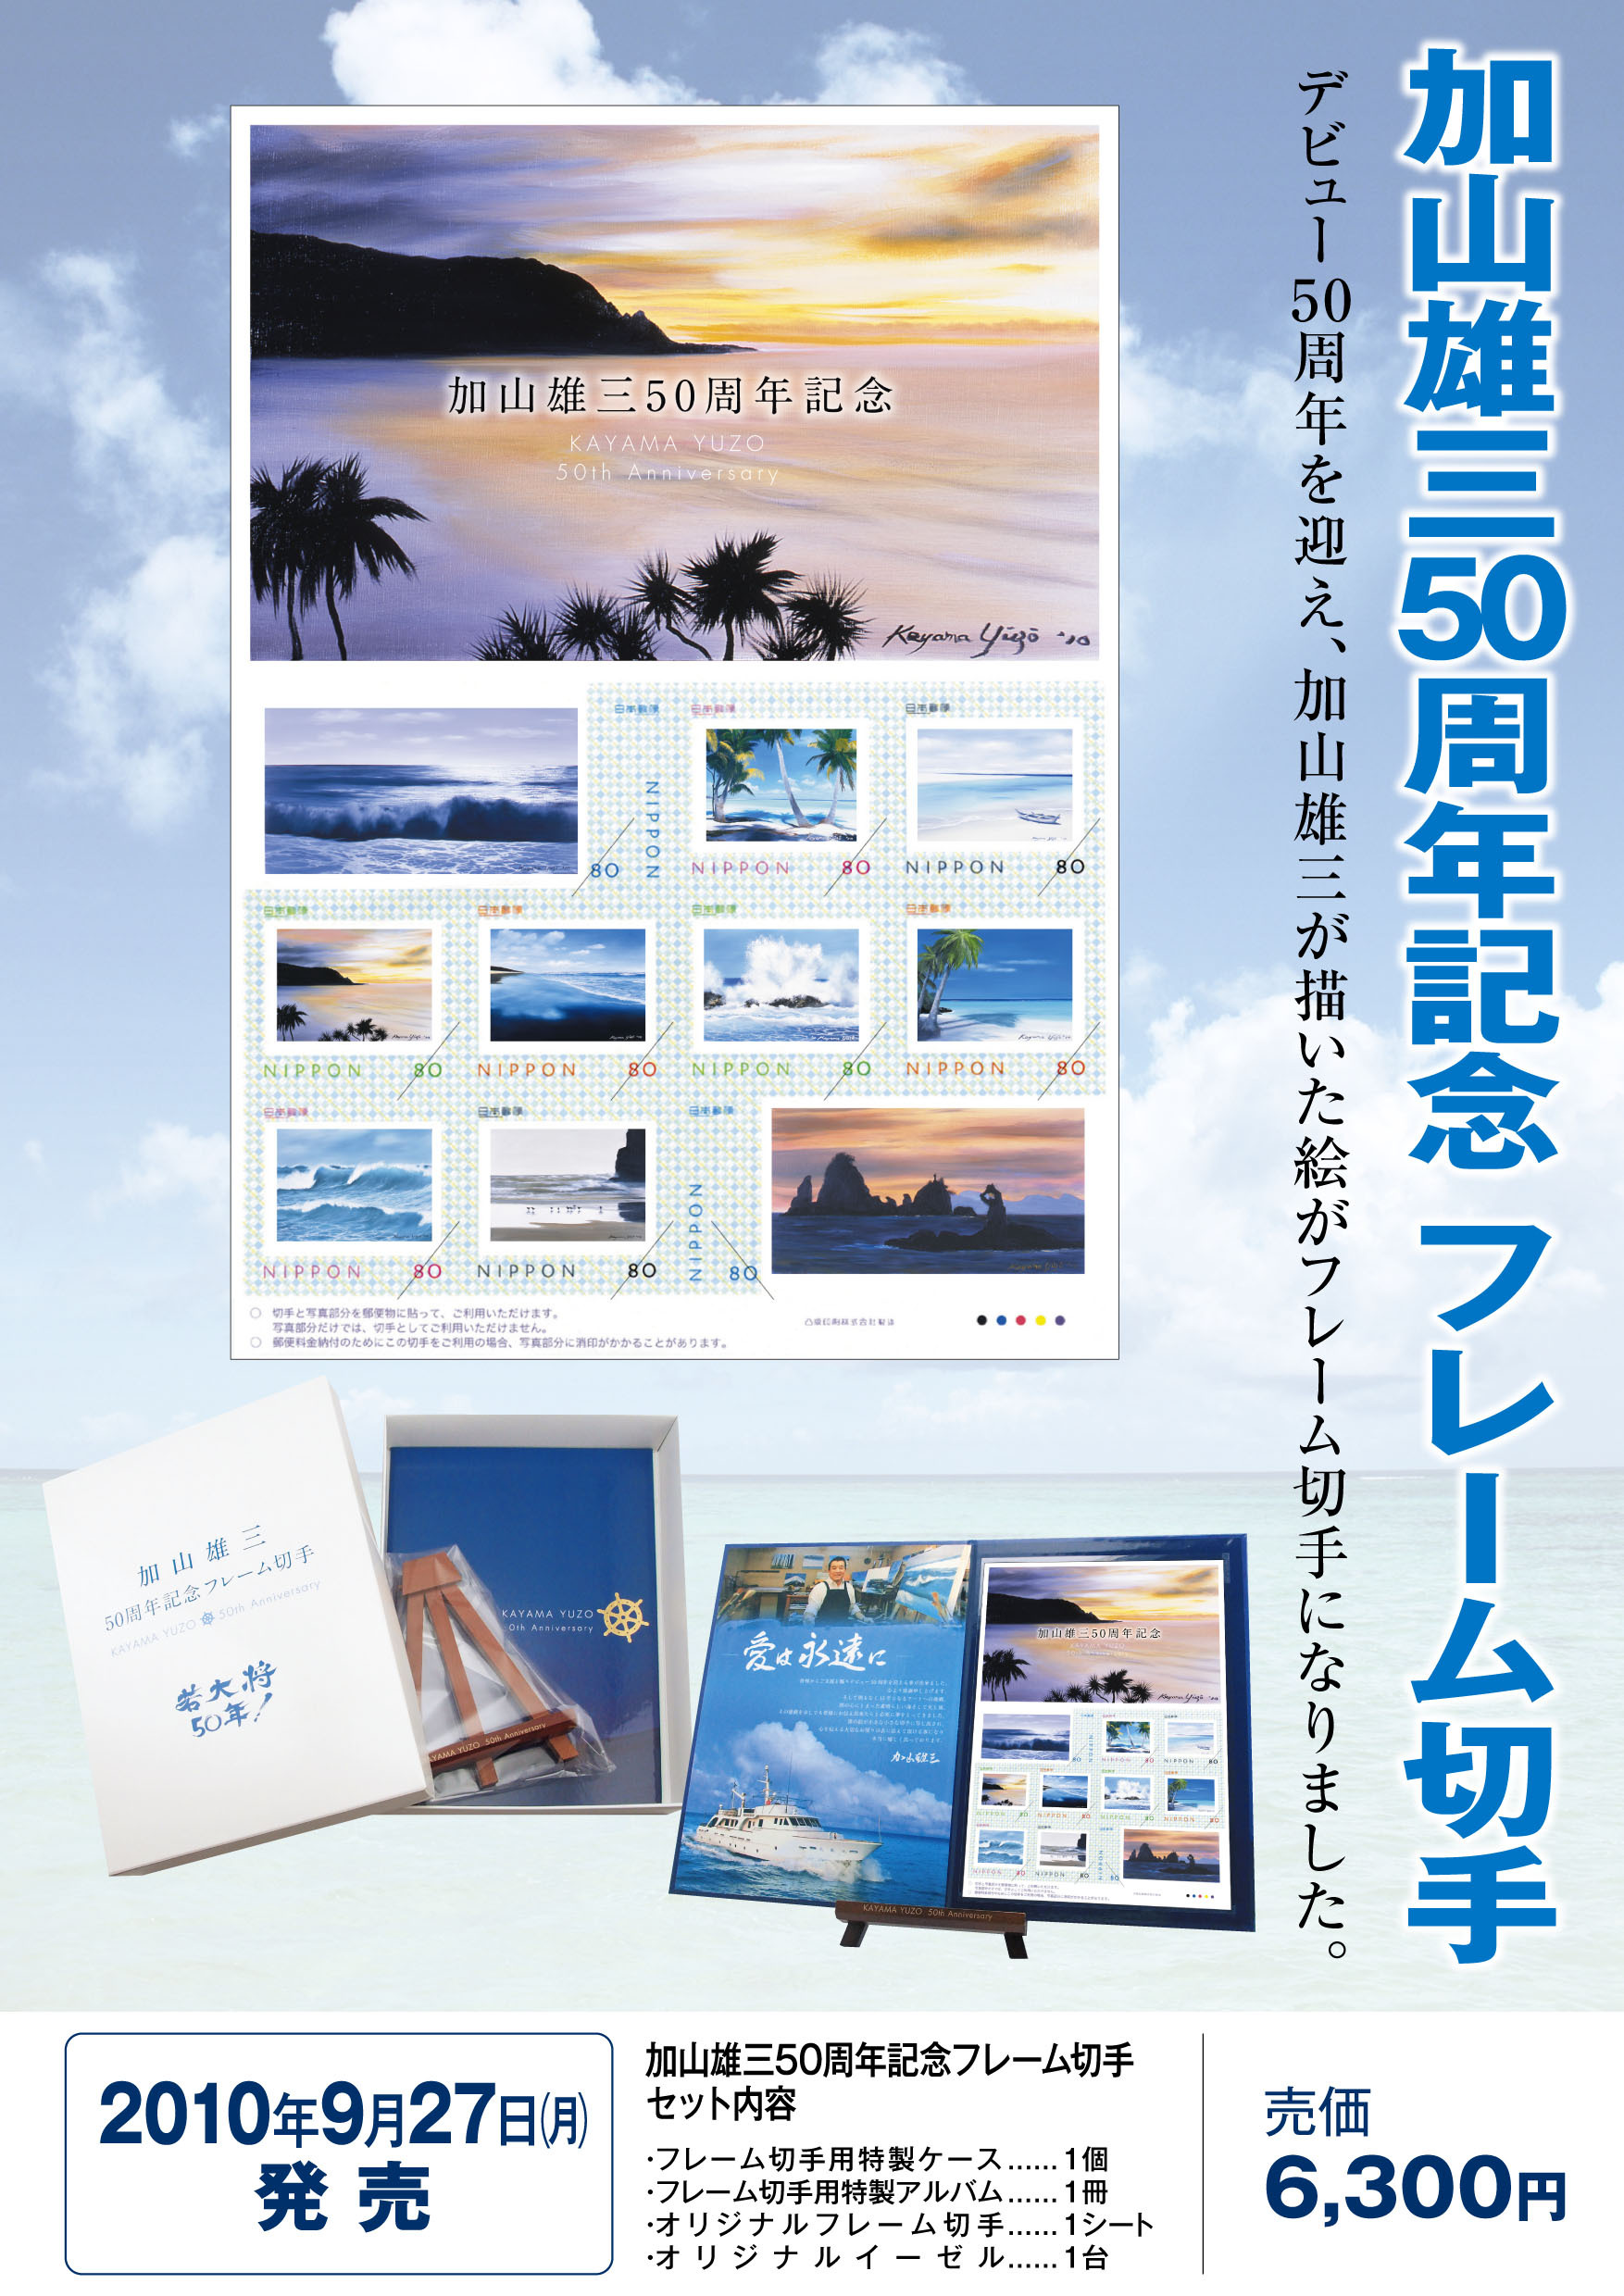 加山雄三 50周年記念 フレーム切手 9月26日 日 から販売開始 ｋｎｔ ｃｔ ｈｄのプレスリリース